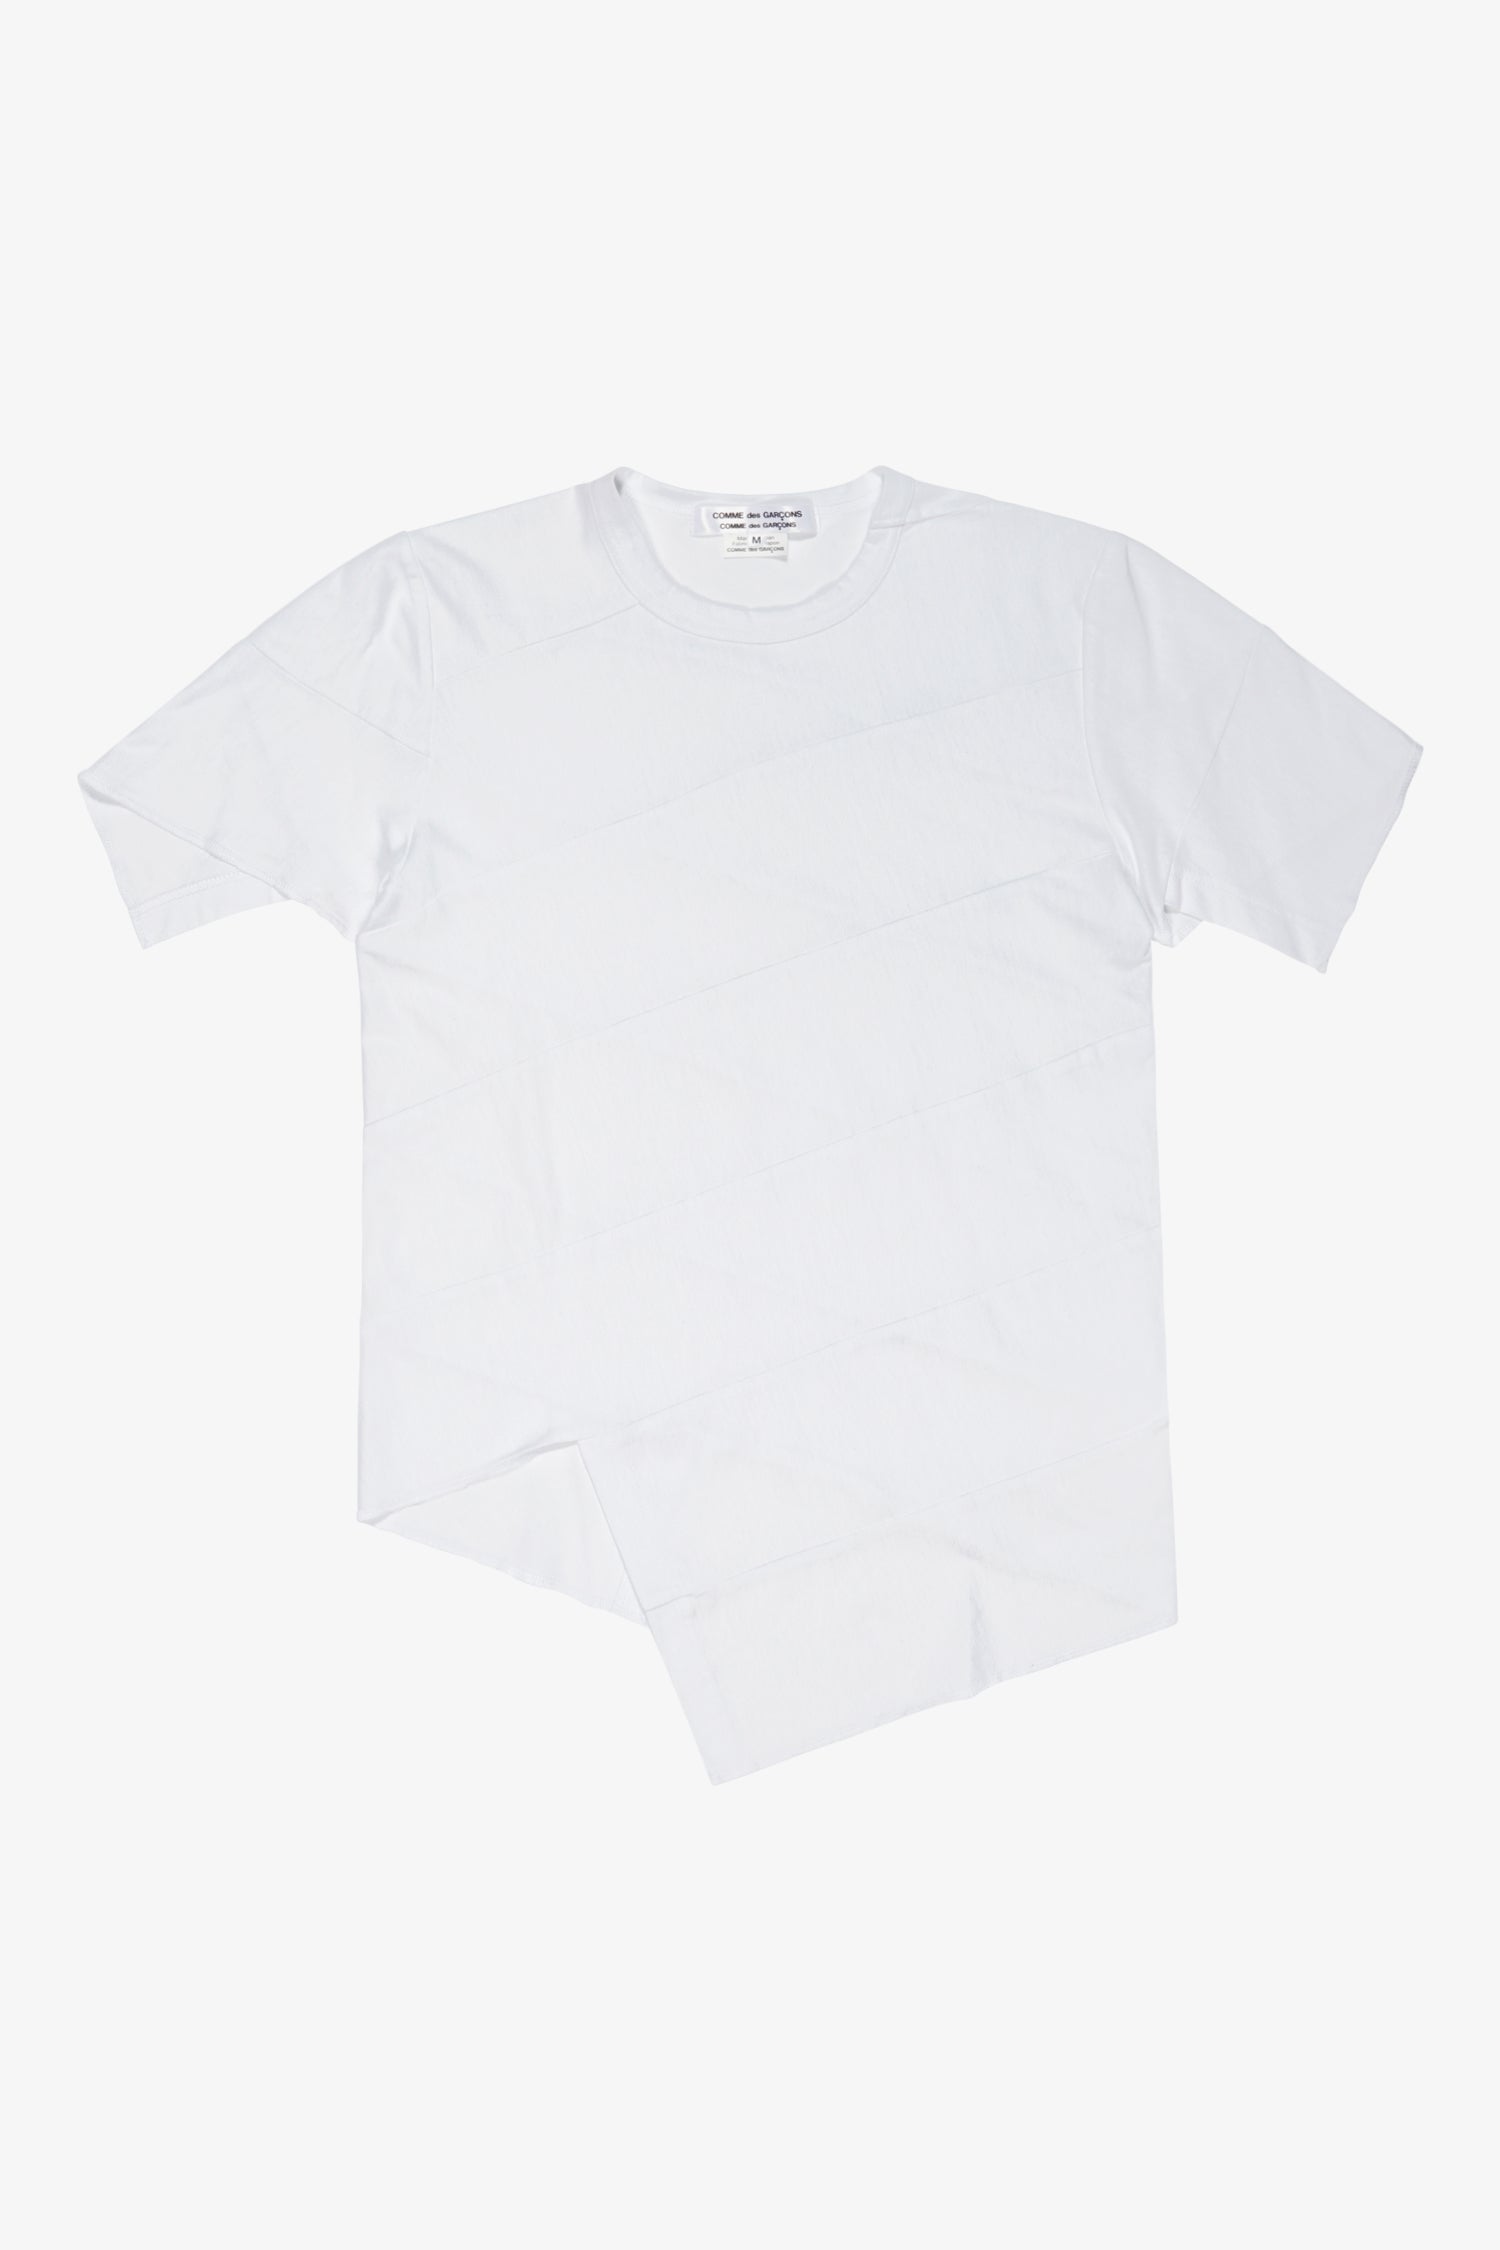 Selectshop FRAME - COMME DES GARÇONS COMME DES GARÇONS Deconstructed Asymmetric T-Shirt T-Shirt Dubai